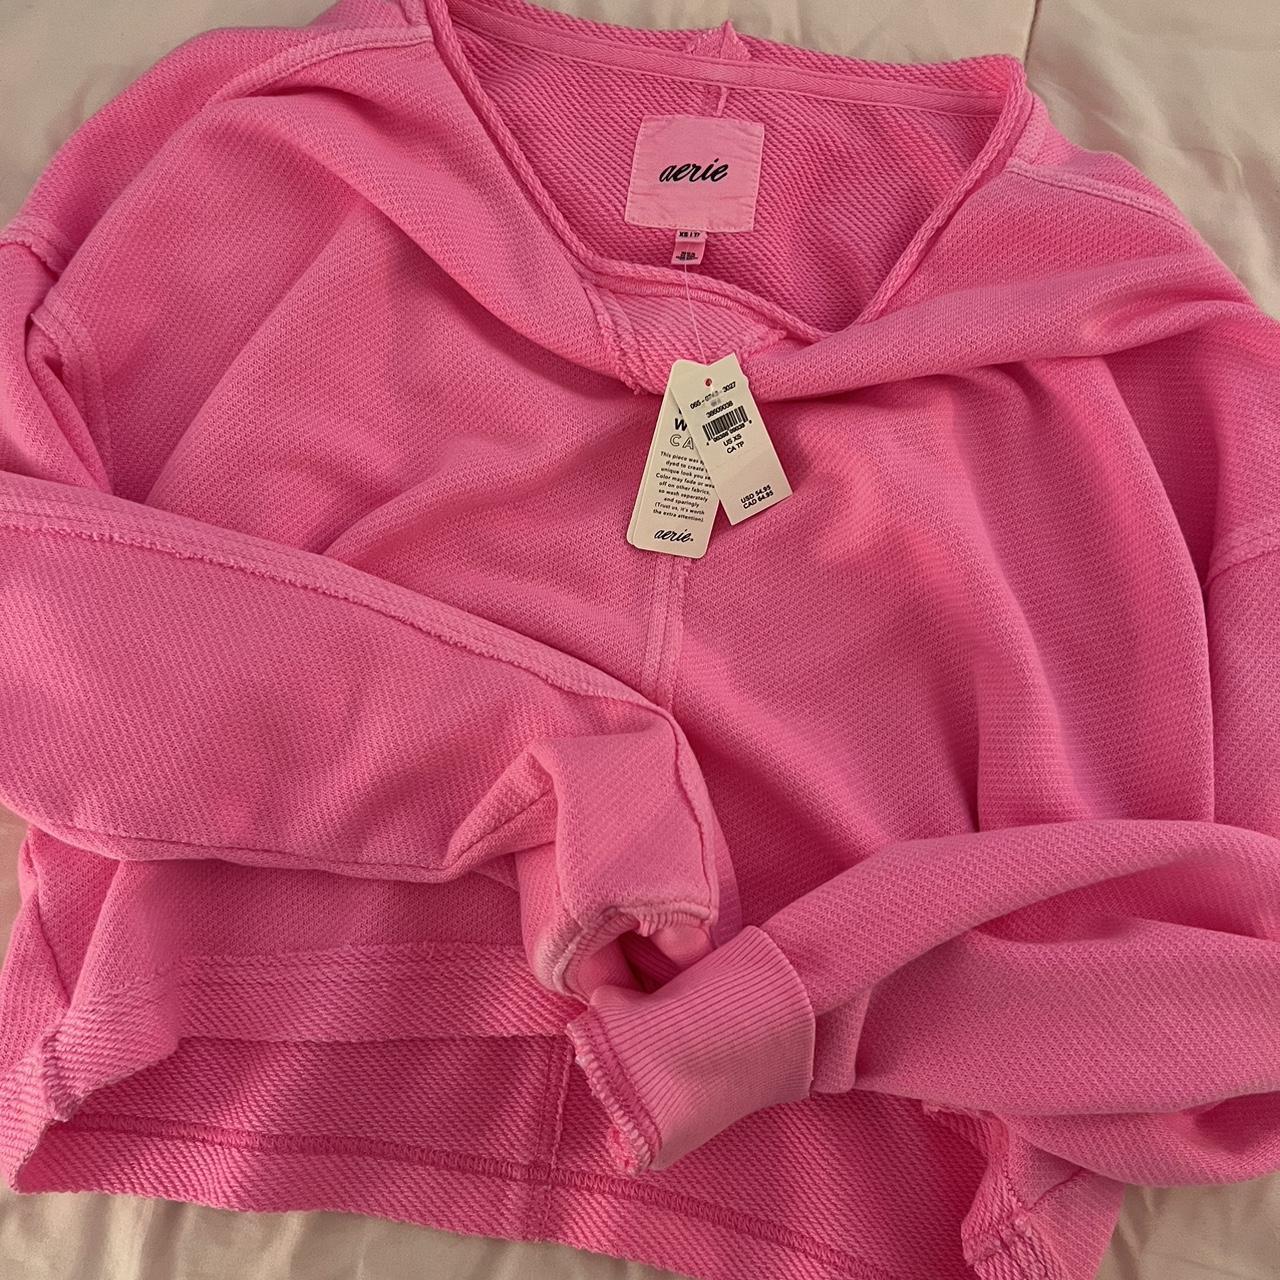 LoveShackFancy Women's Pink and White Sweatshirt